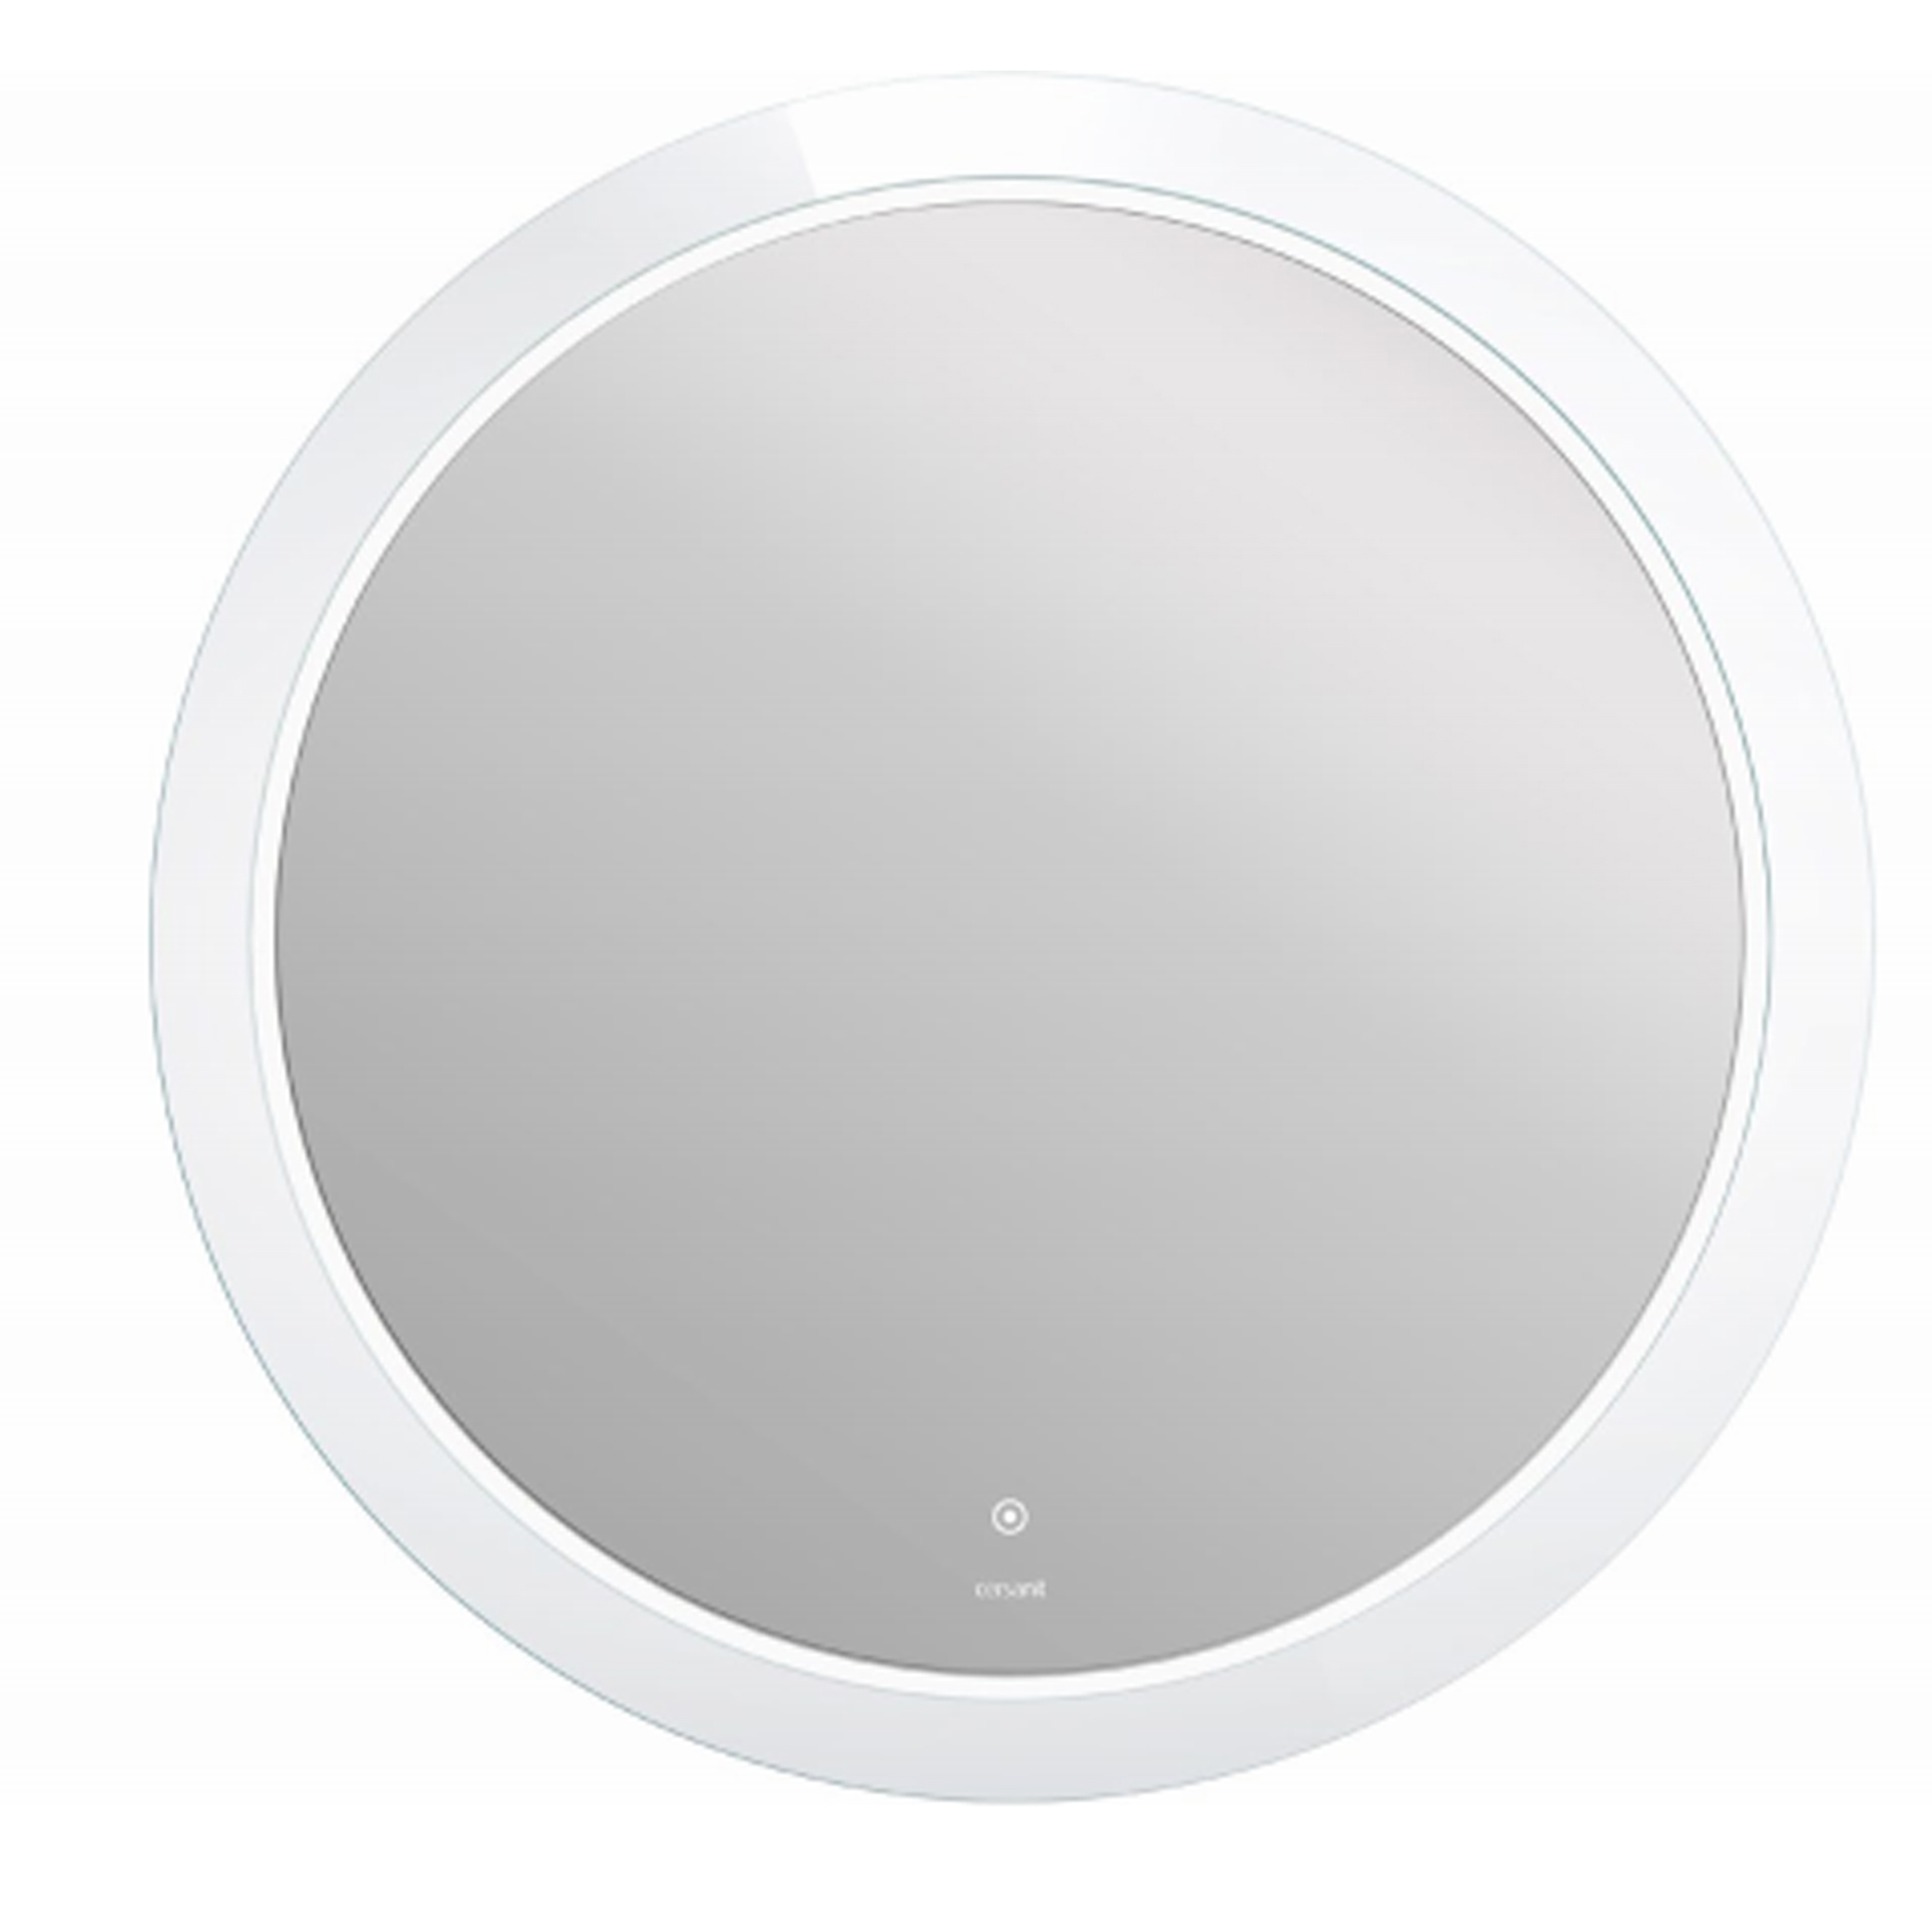 Зеркало Cersanit Led 012 design 72 с подсветкой, цвет без цвета (просто зеркальное полотно) KN-LU-LED012*72-d-Os - фото 1